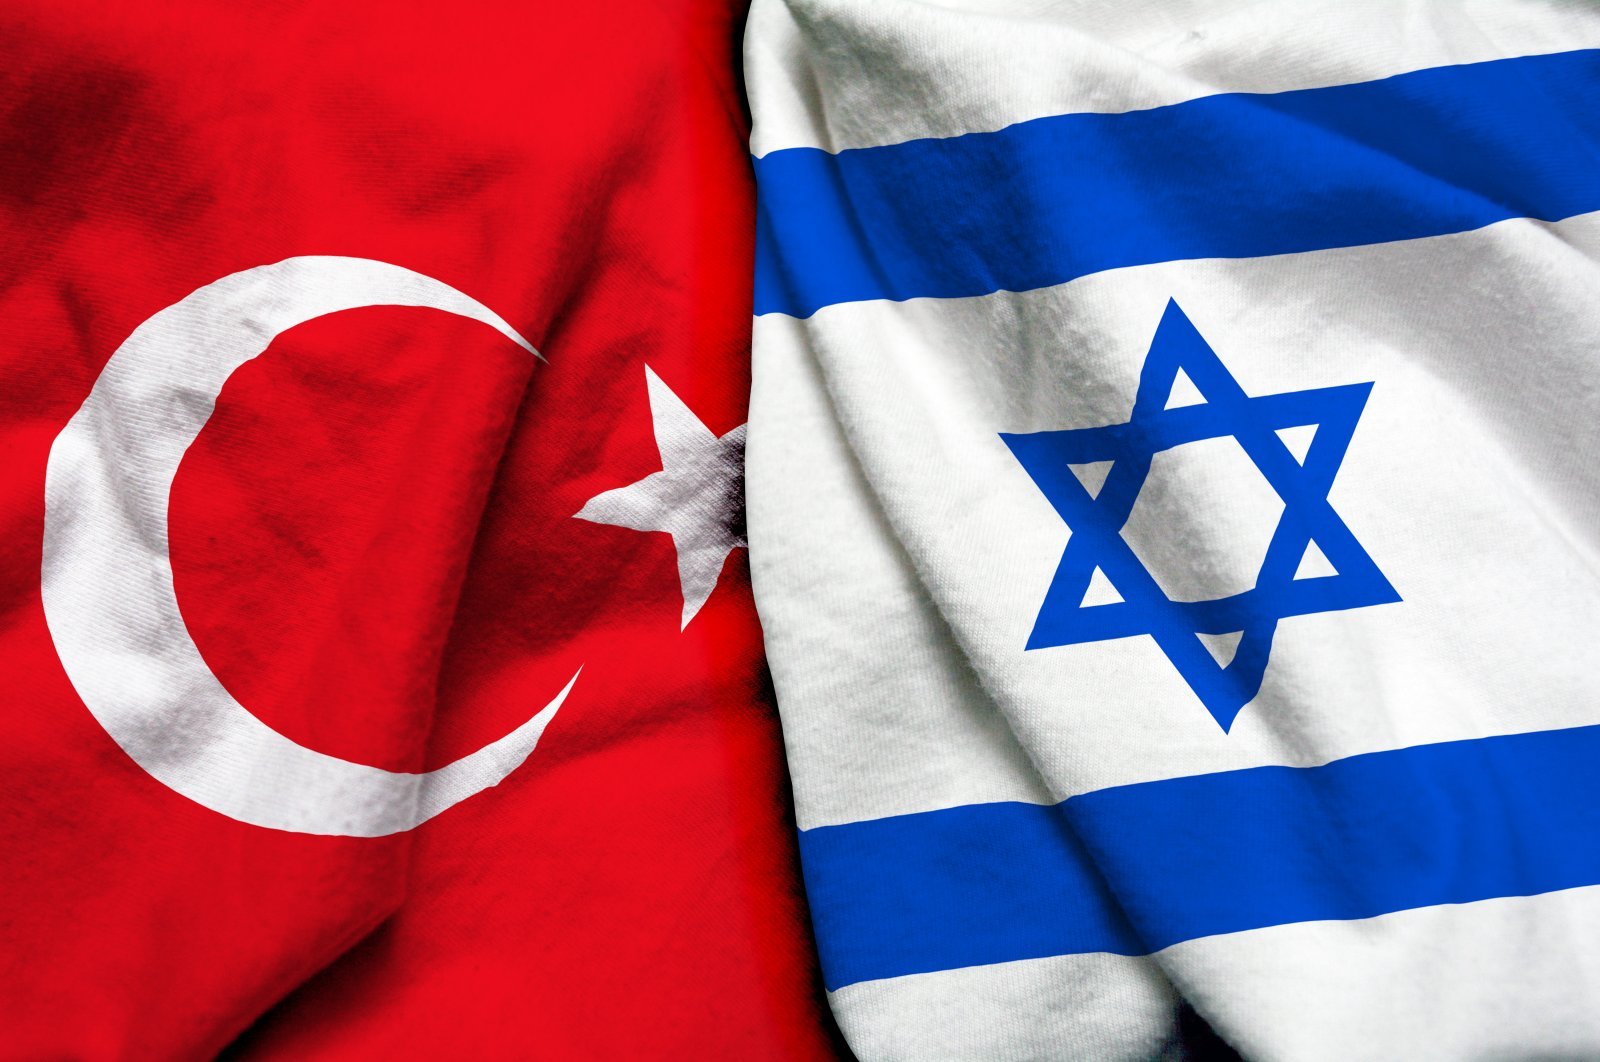 Türkiyə və İsrail arasında aviasiya əlaqələrinin yaradılmasına dair razılaşma təstiqlənib